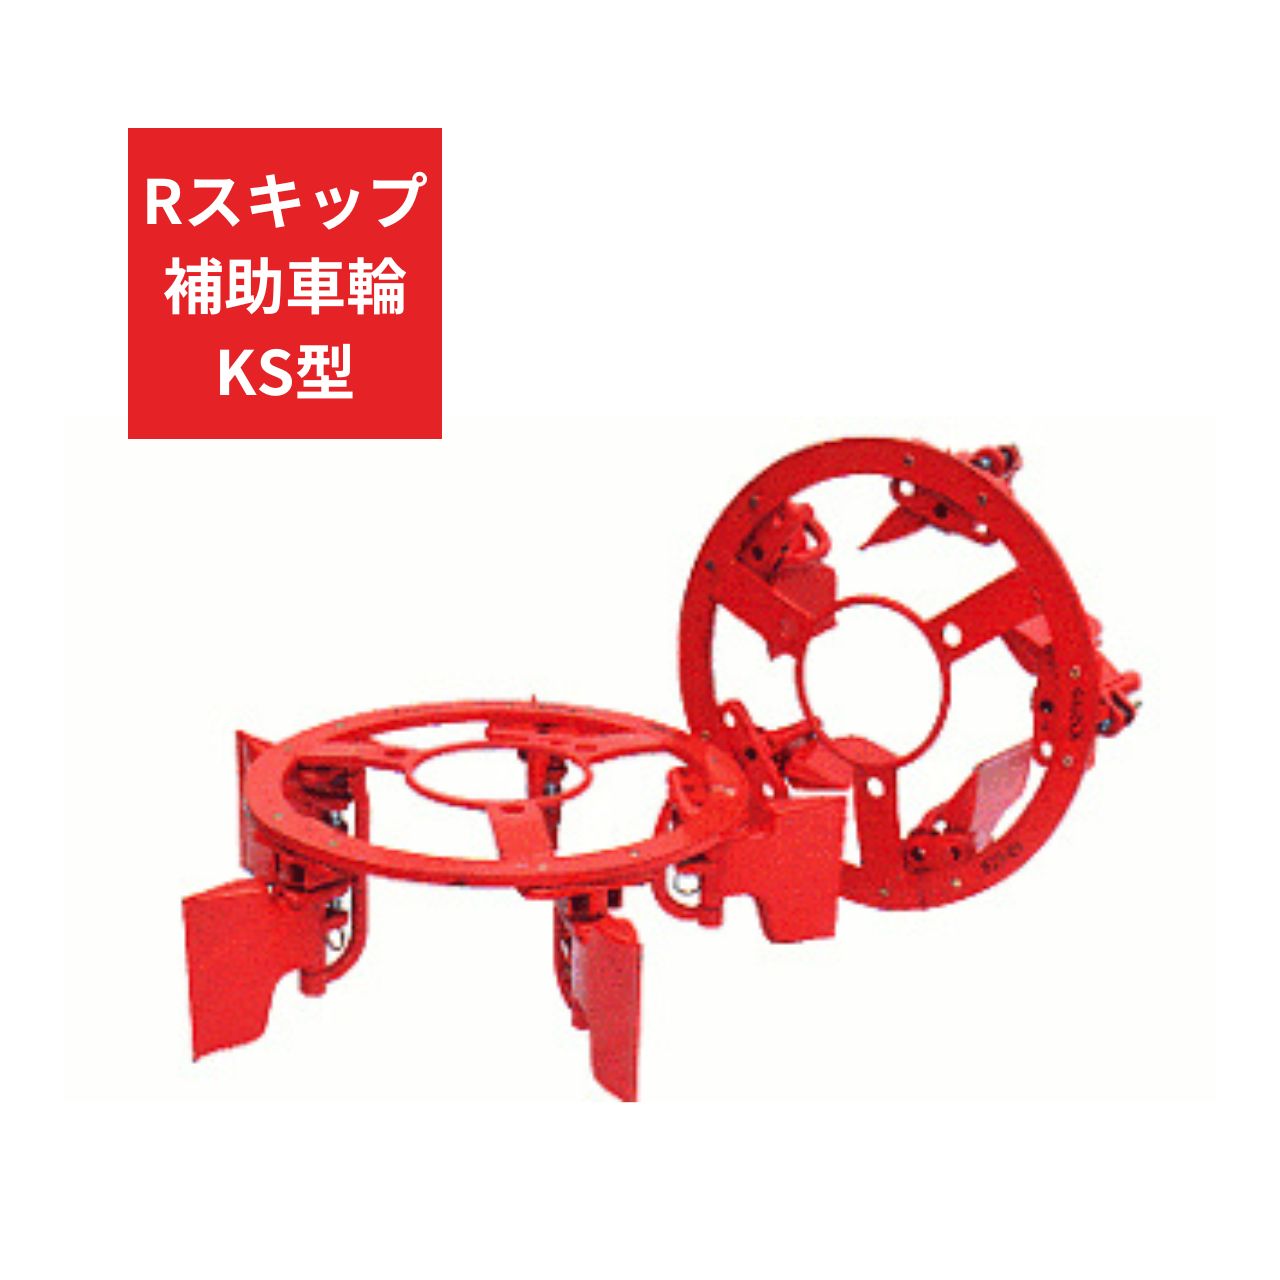 トラクター用 補助車輪 KS車輪 Rスキップ補助車輪KS ジョーニシ RKS210 12.4-28 通販